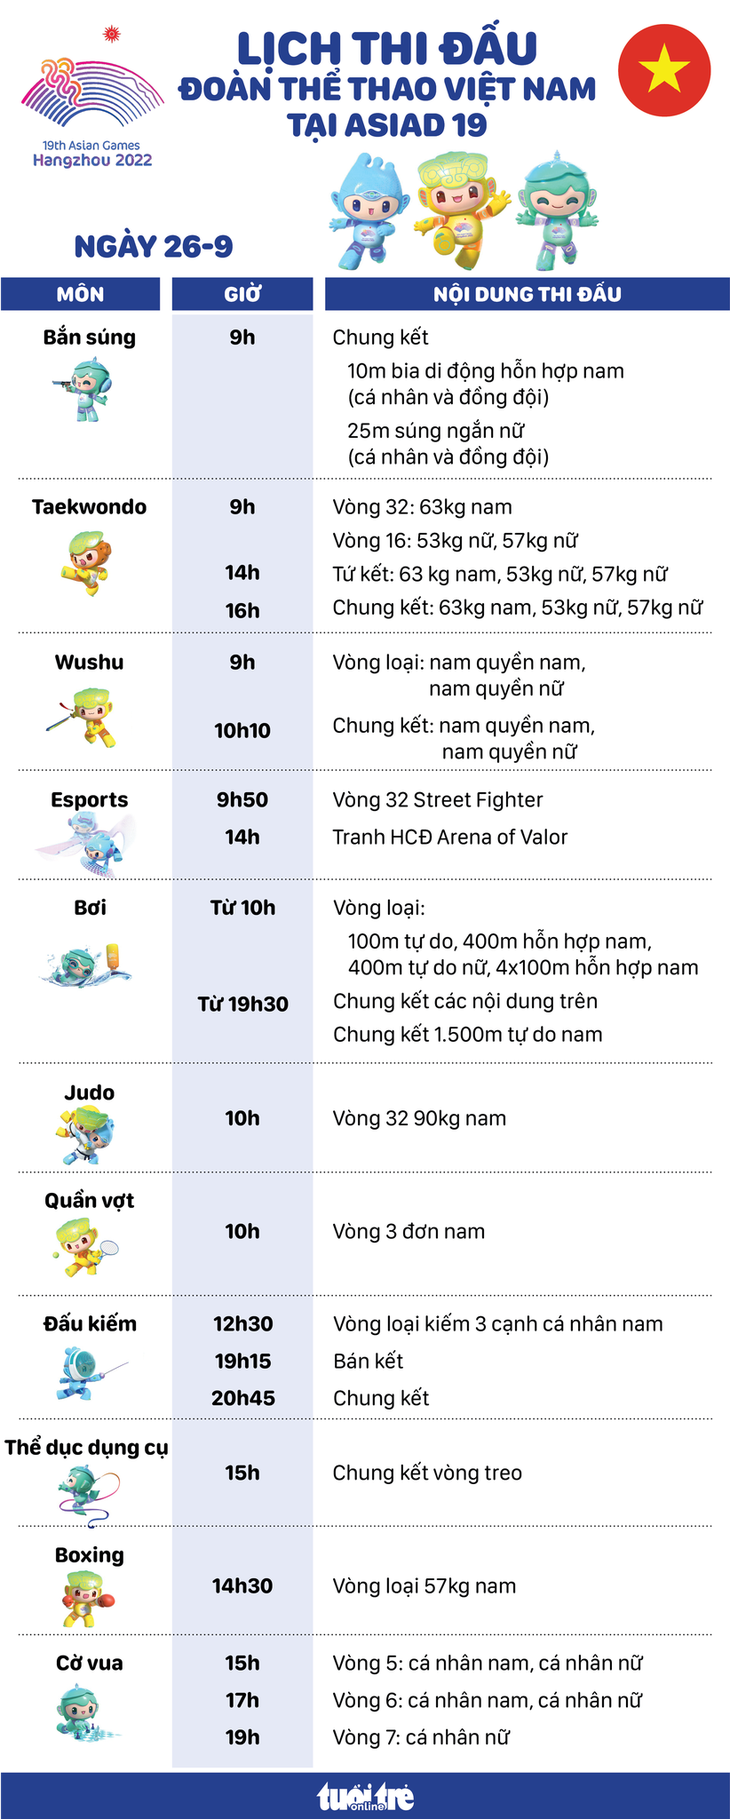 Lịch thi đấu ngày 26-9 của đoàn thể thao Việt Nam tại Asiad 19 - Đồ họa: AN BÌNH